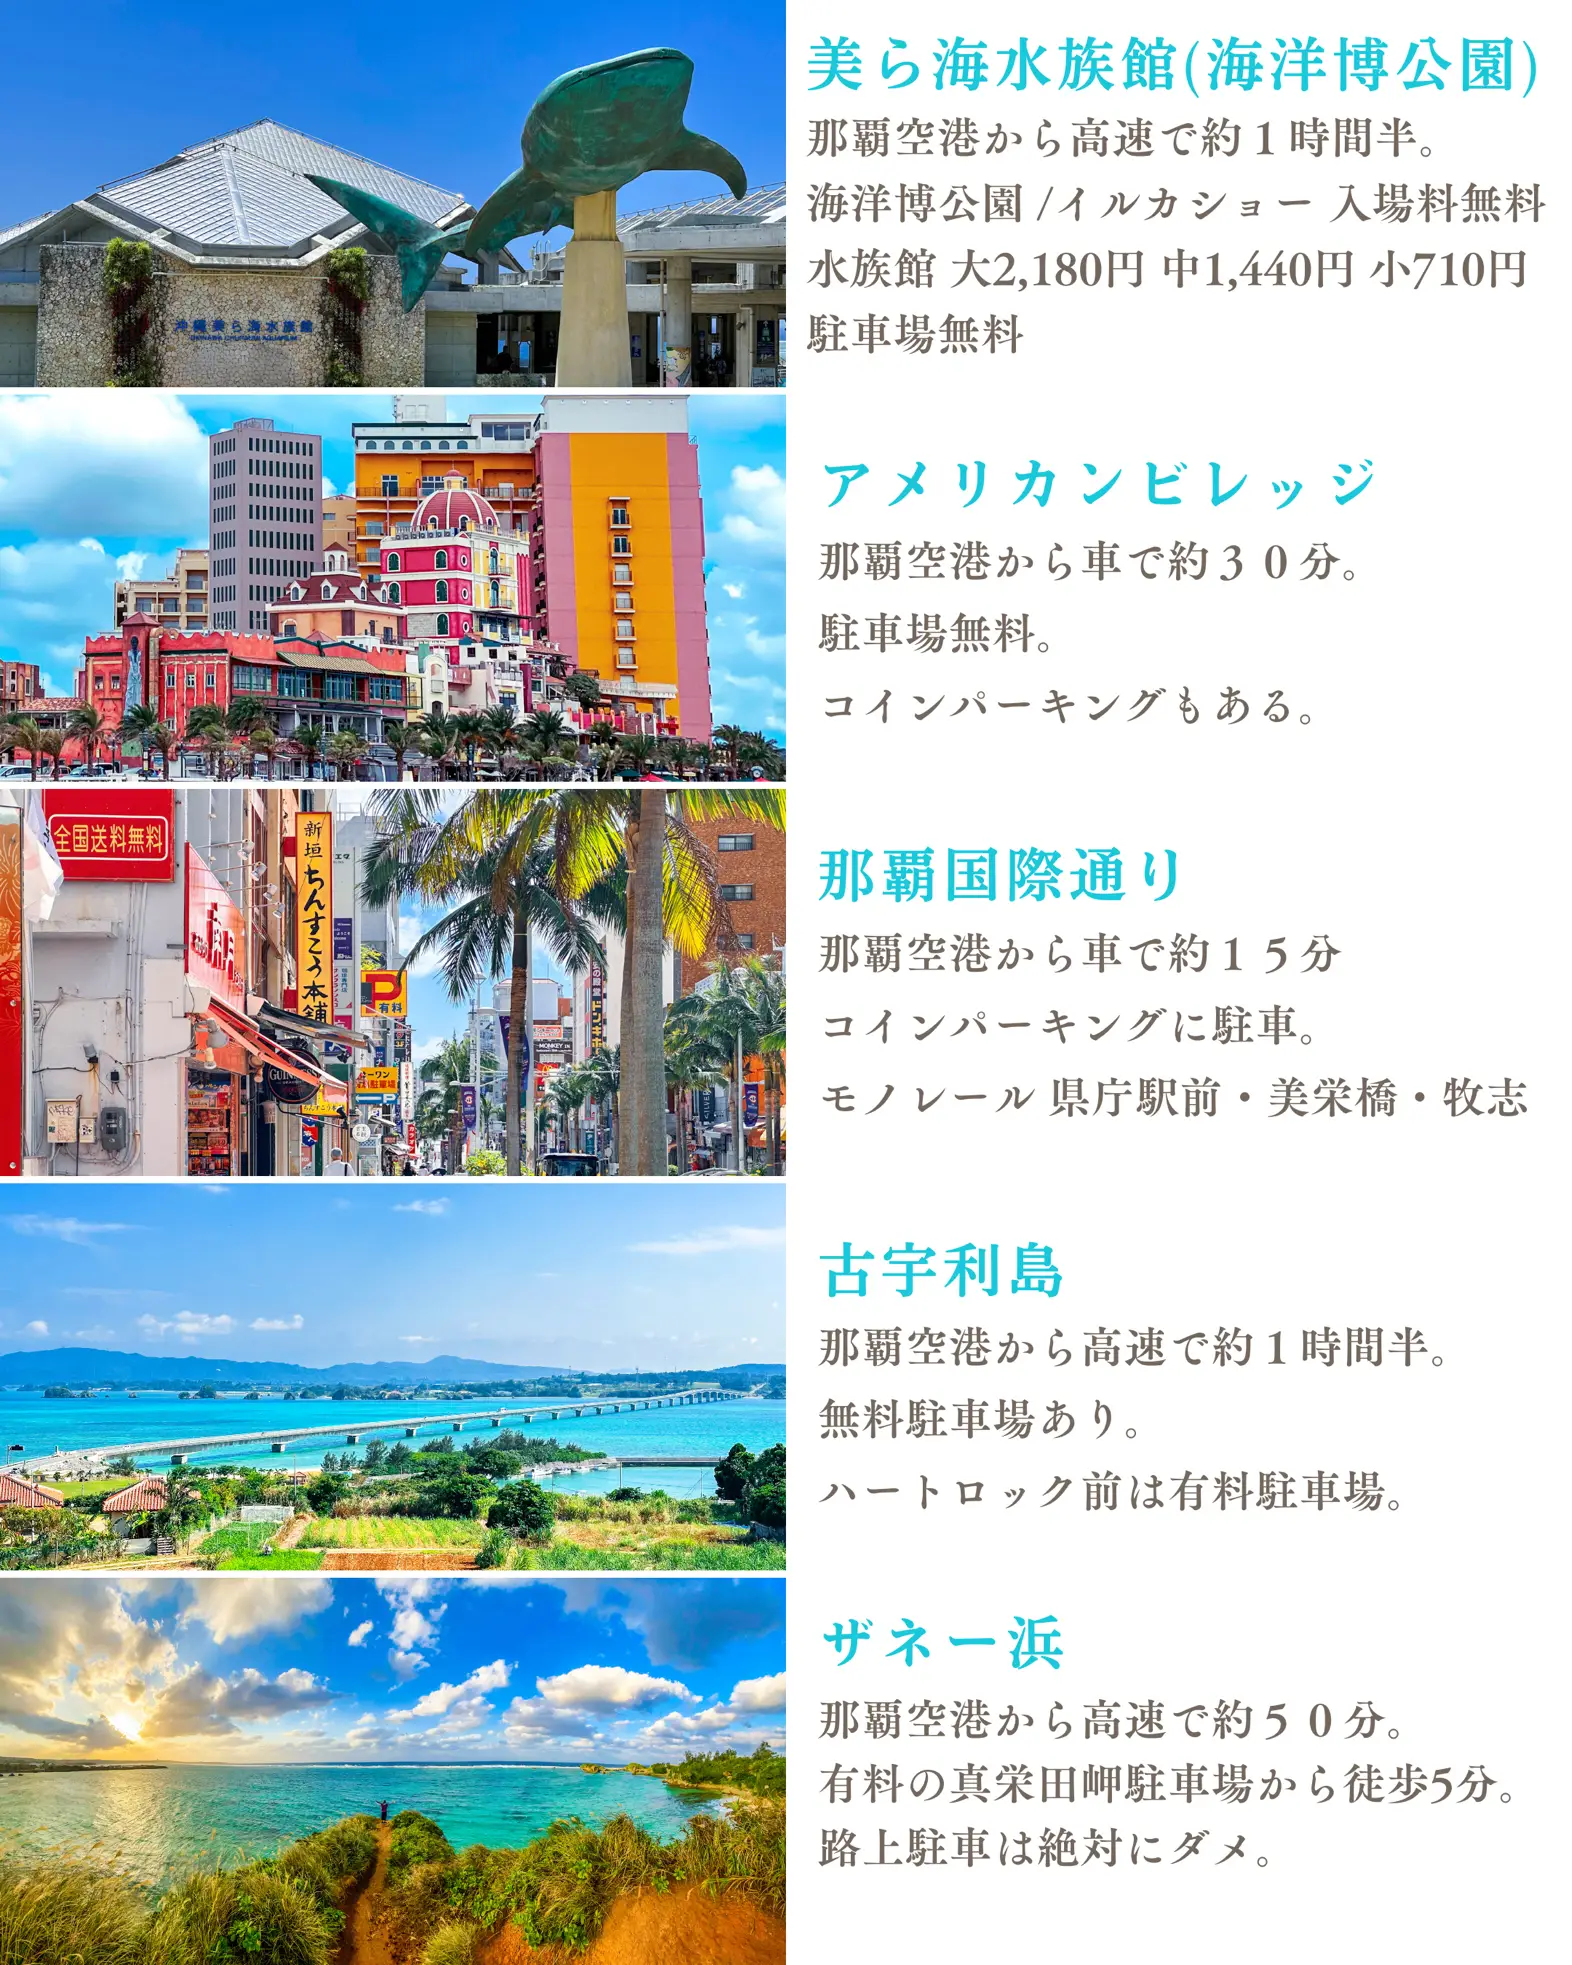 沖縄旅行 カフェ巡り - Lemon8検索